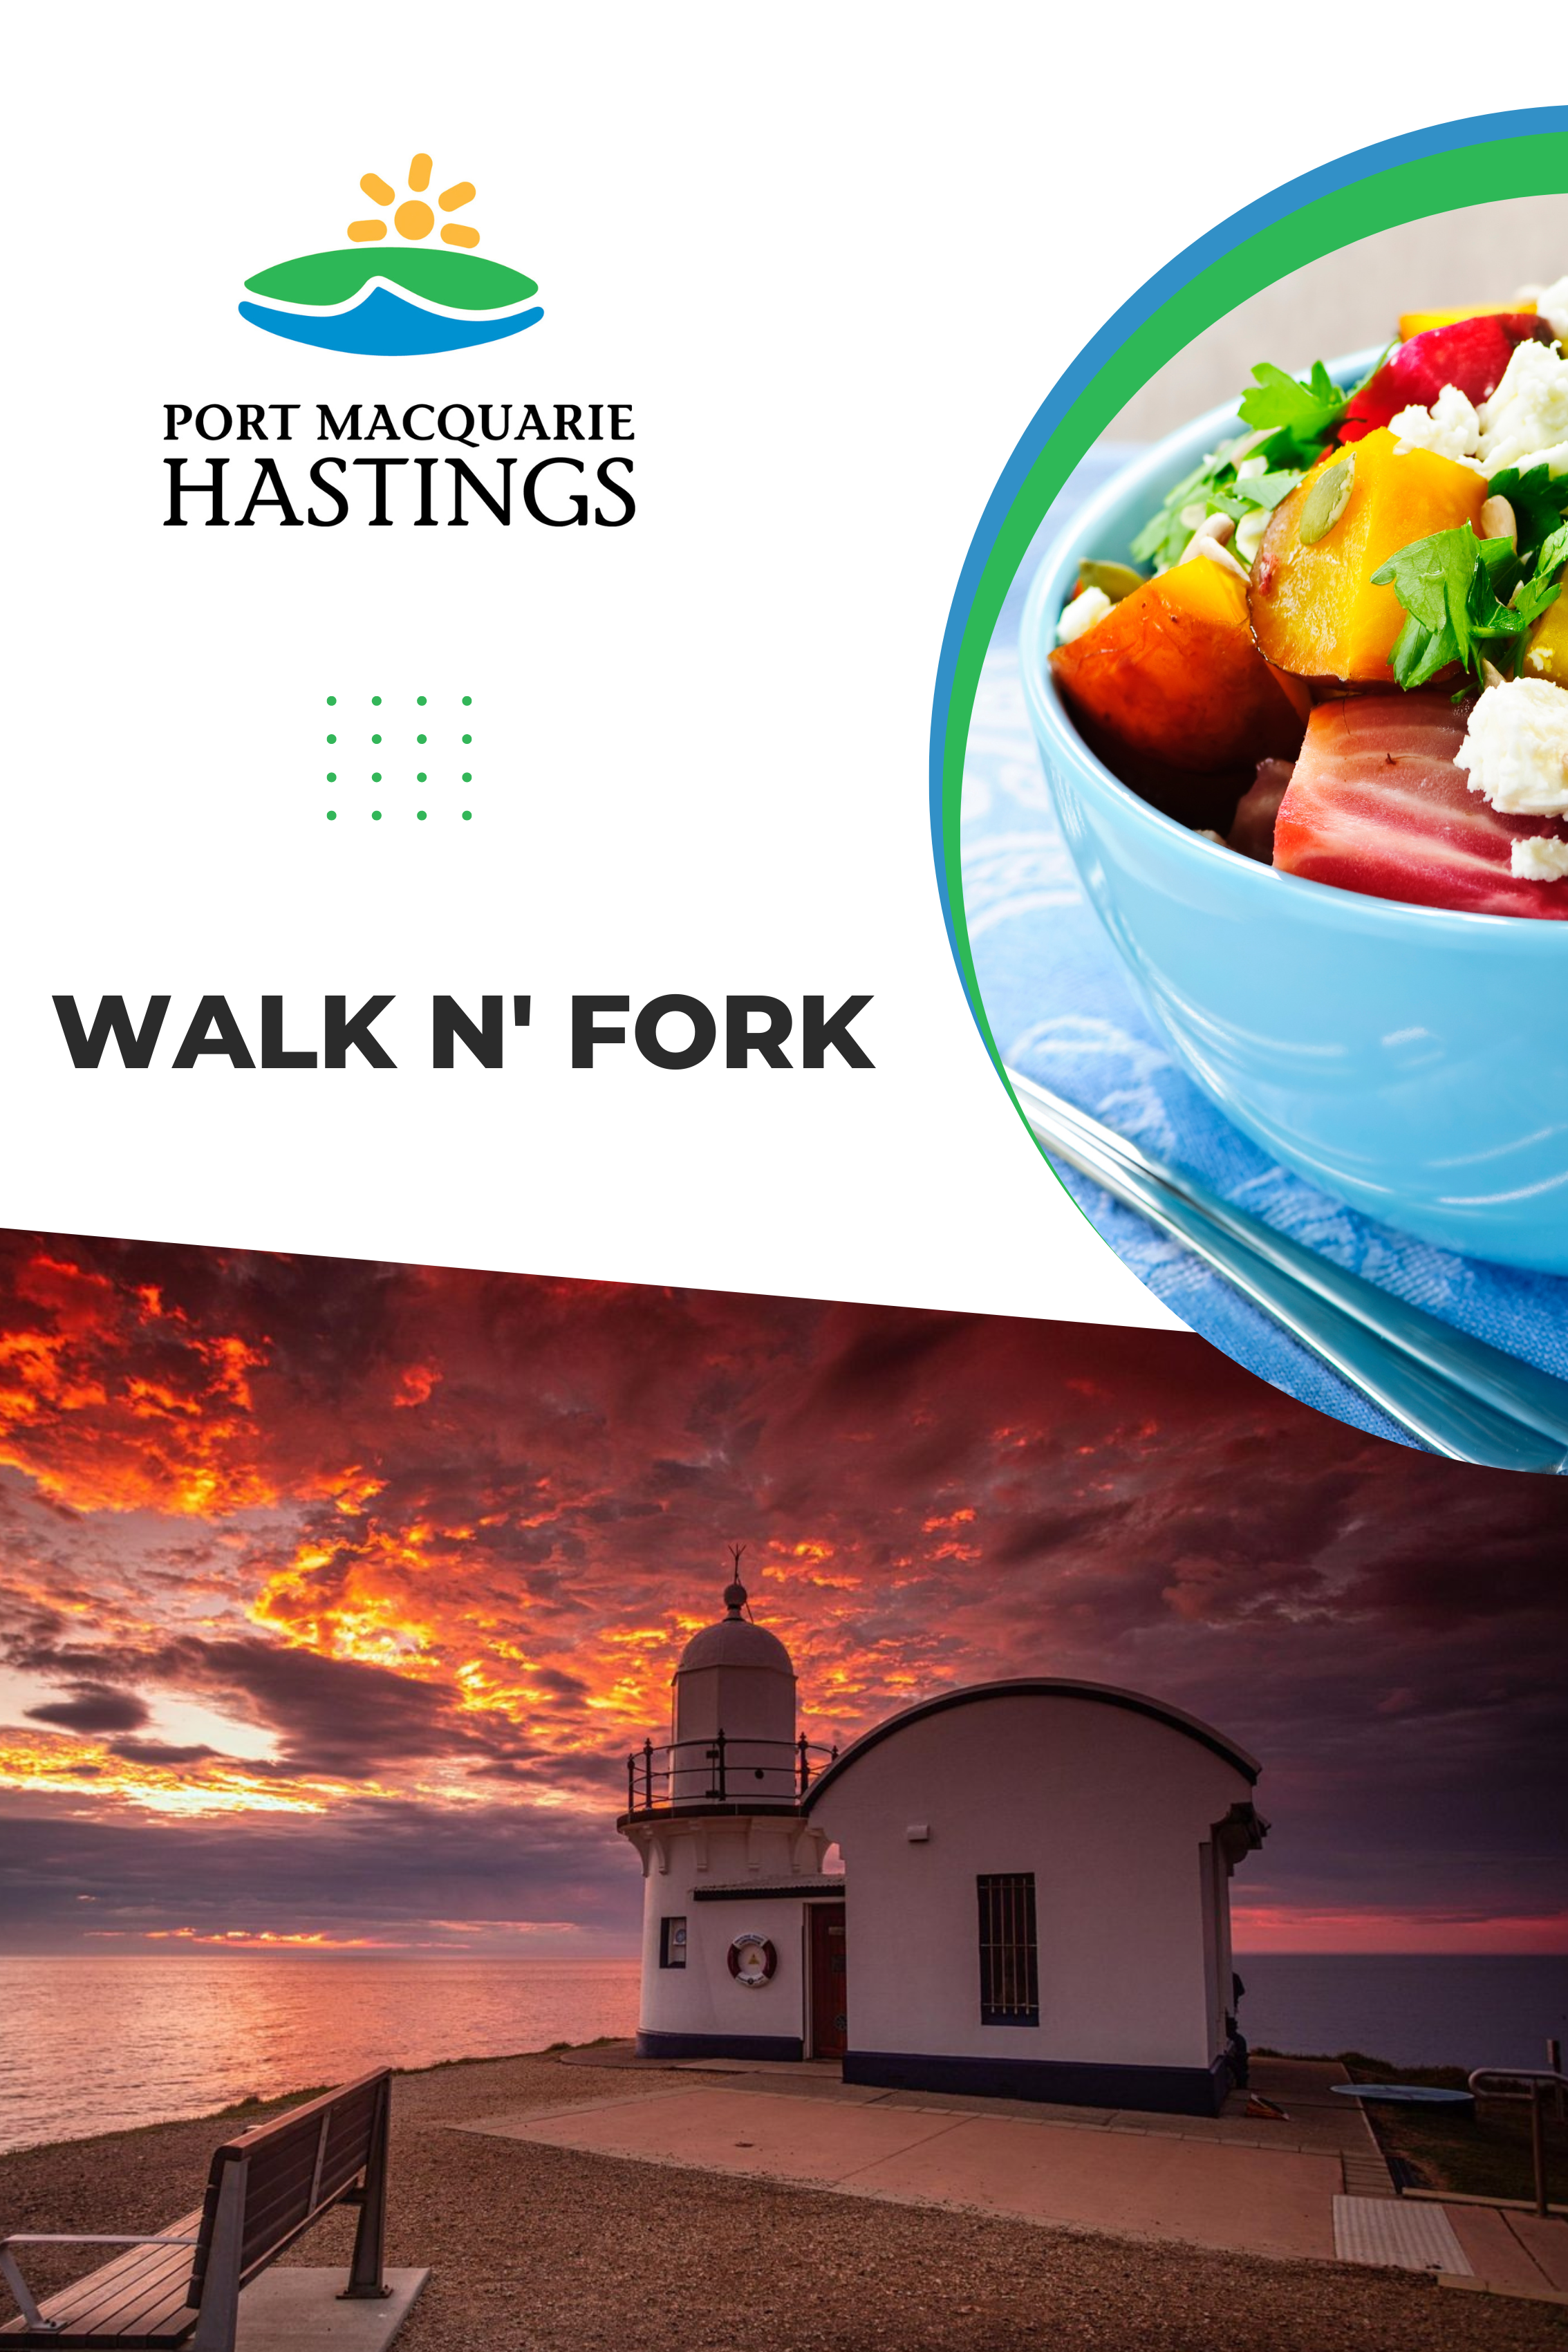 Walk n' Fork with Port Macquarie Hastings